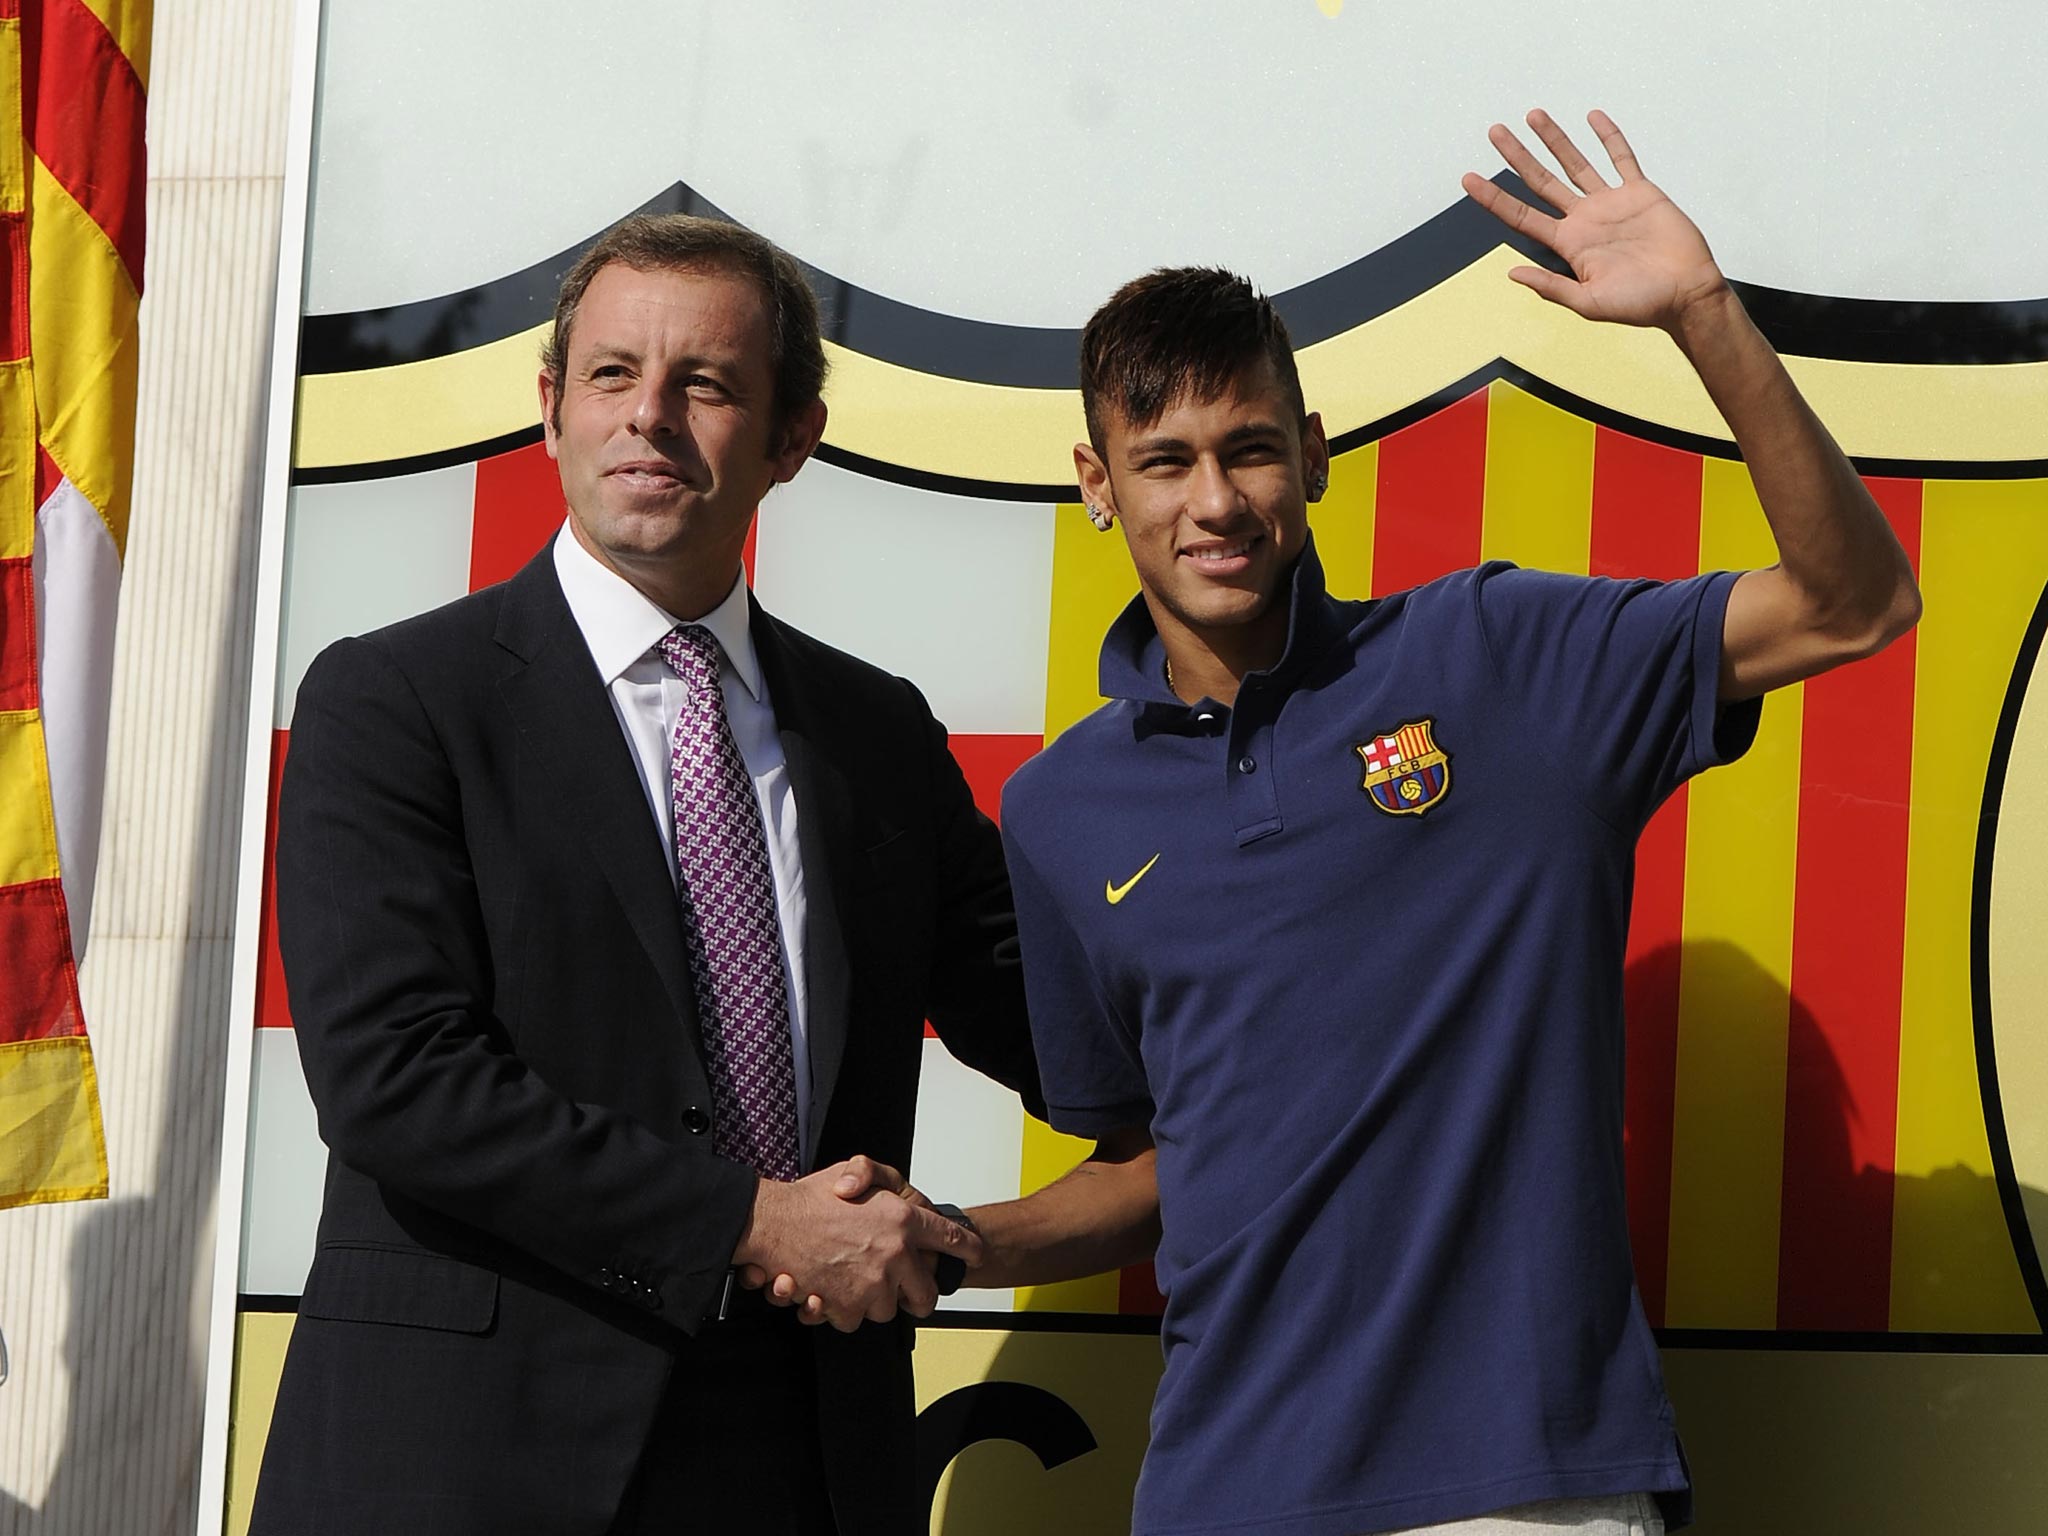 Neymar and former Barcelona president Sandro Rosell